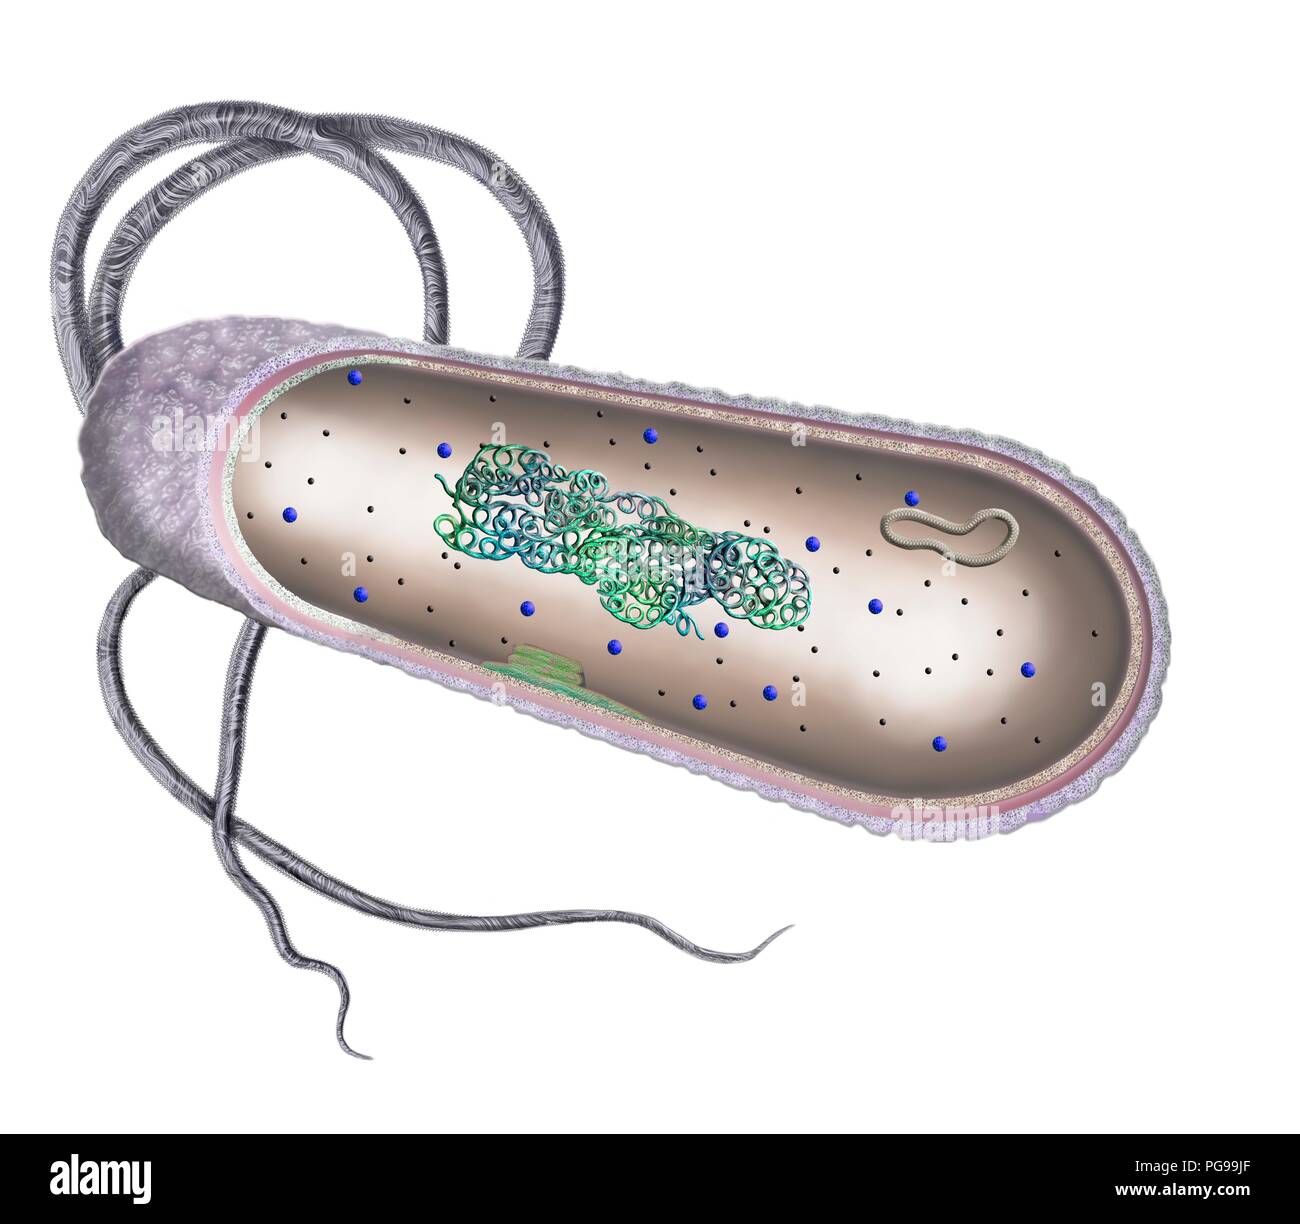 Cellule bactérienne. Illustration en coupe de la structure interne d'une cellule bactérienne typique. Les cellules bactériennes n'ont pas un noyau lié à la membrane ou orga Banque D'Images